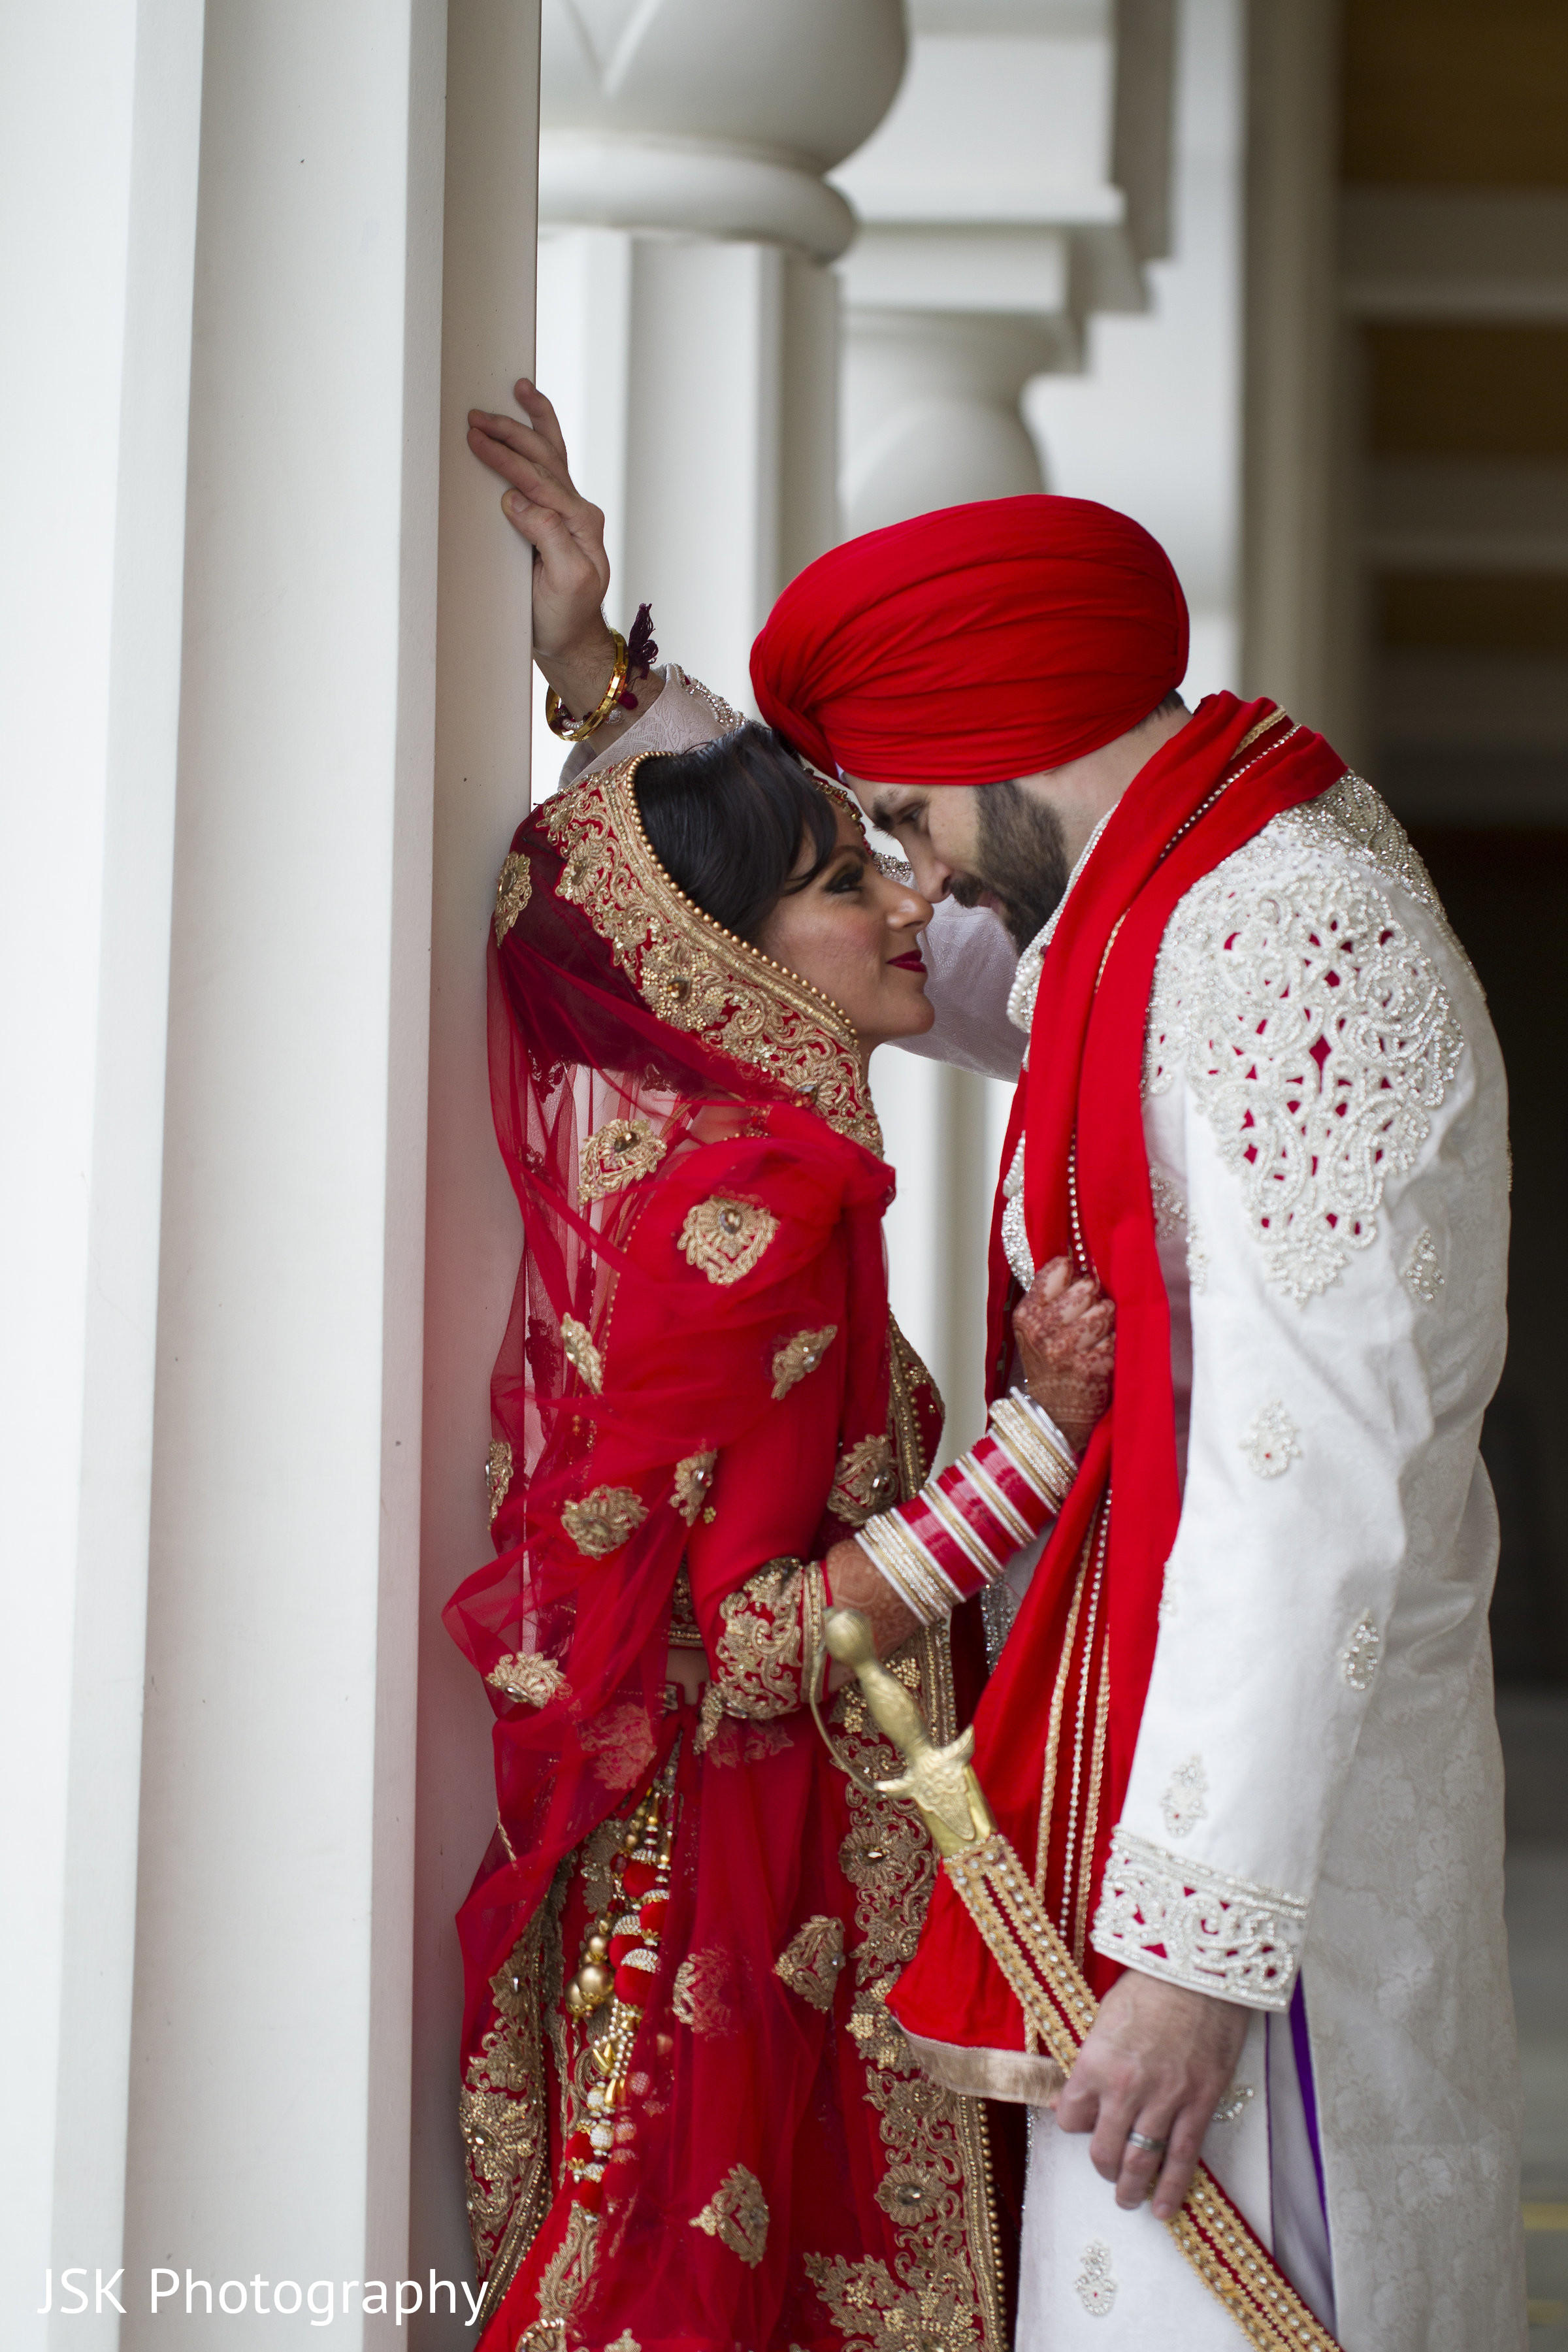 Indian Bride - Indian Bride Game - Dress Up Games